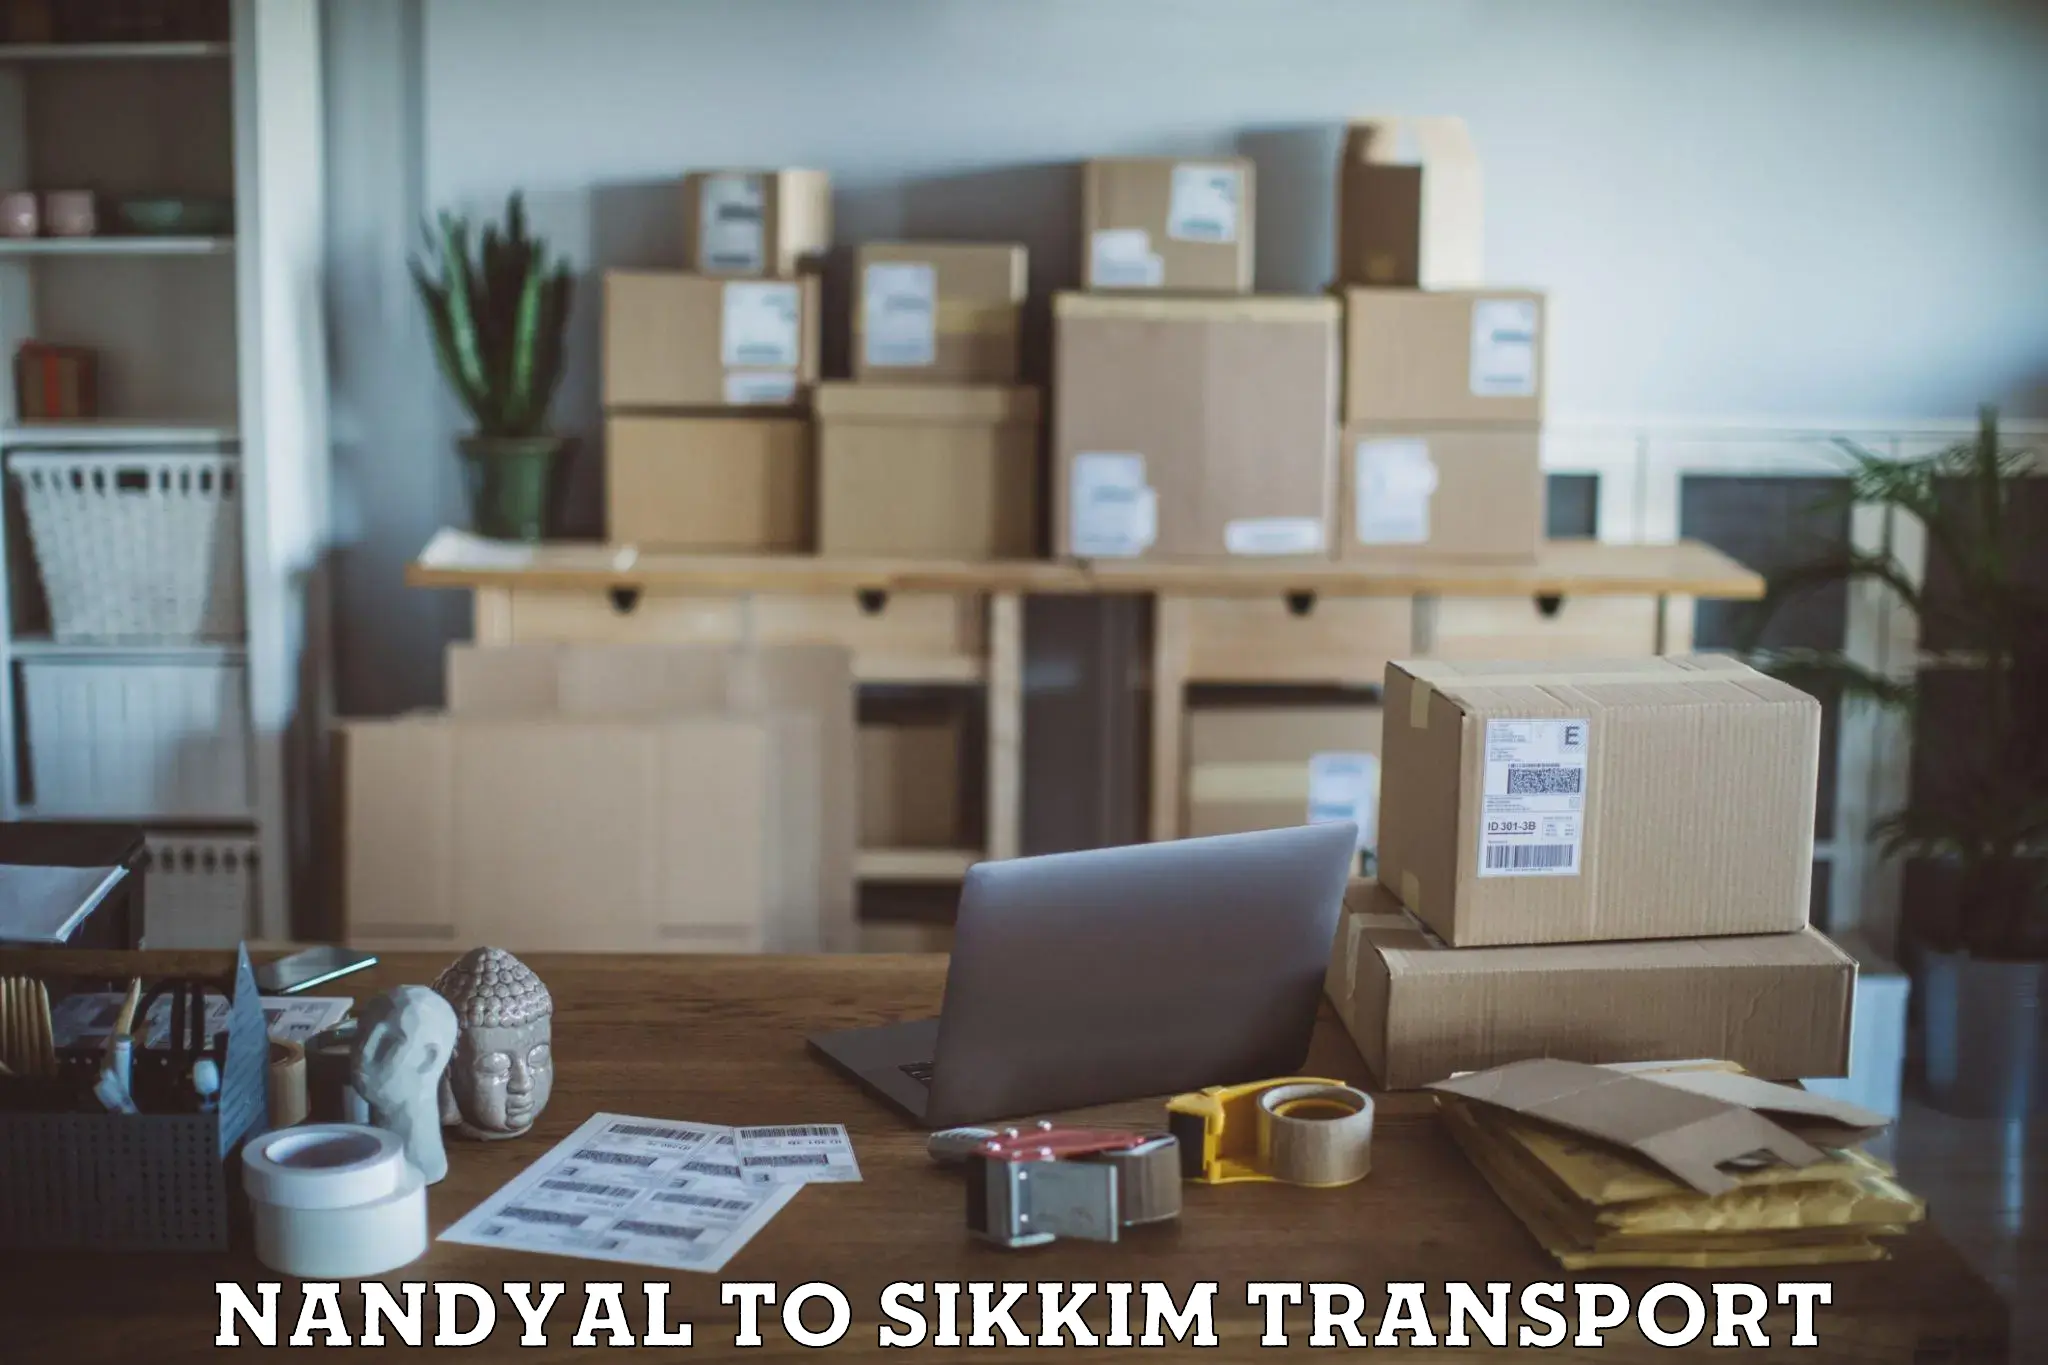 Online transport service Nandyal to East Sikkim